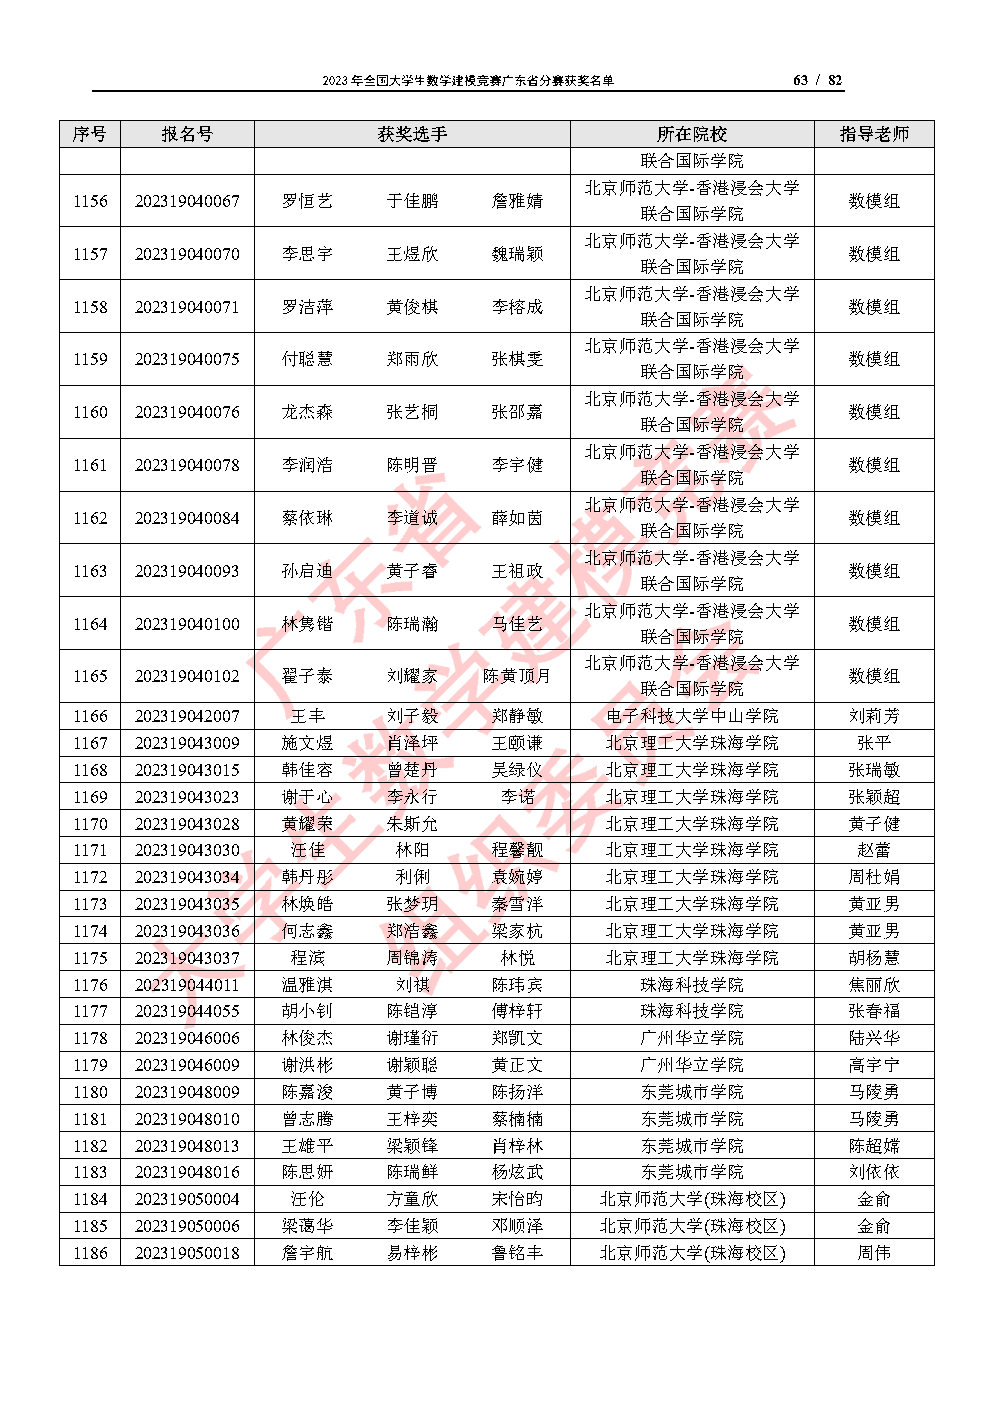 2023年全国大学生数学建模竞赛广东省分赛获奖名单_Page63.jpg